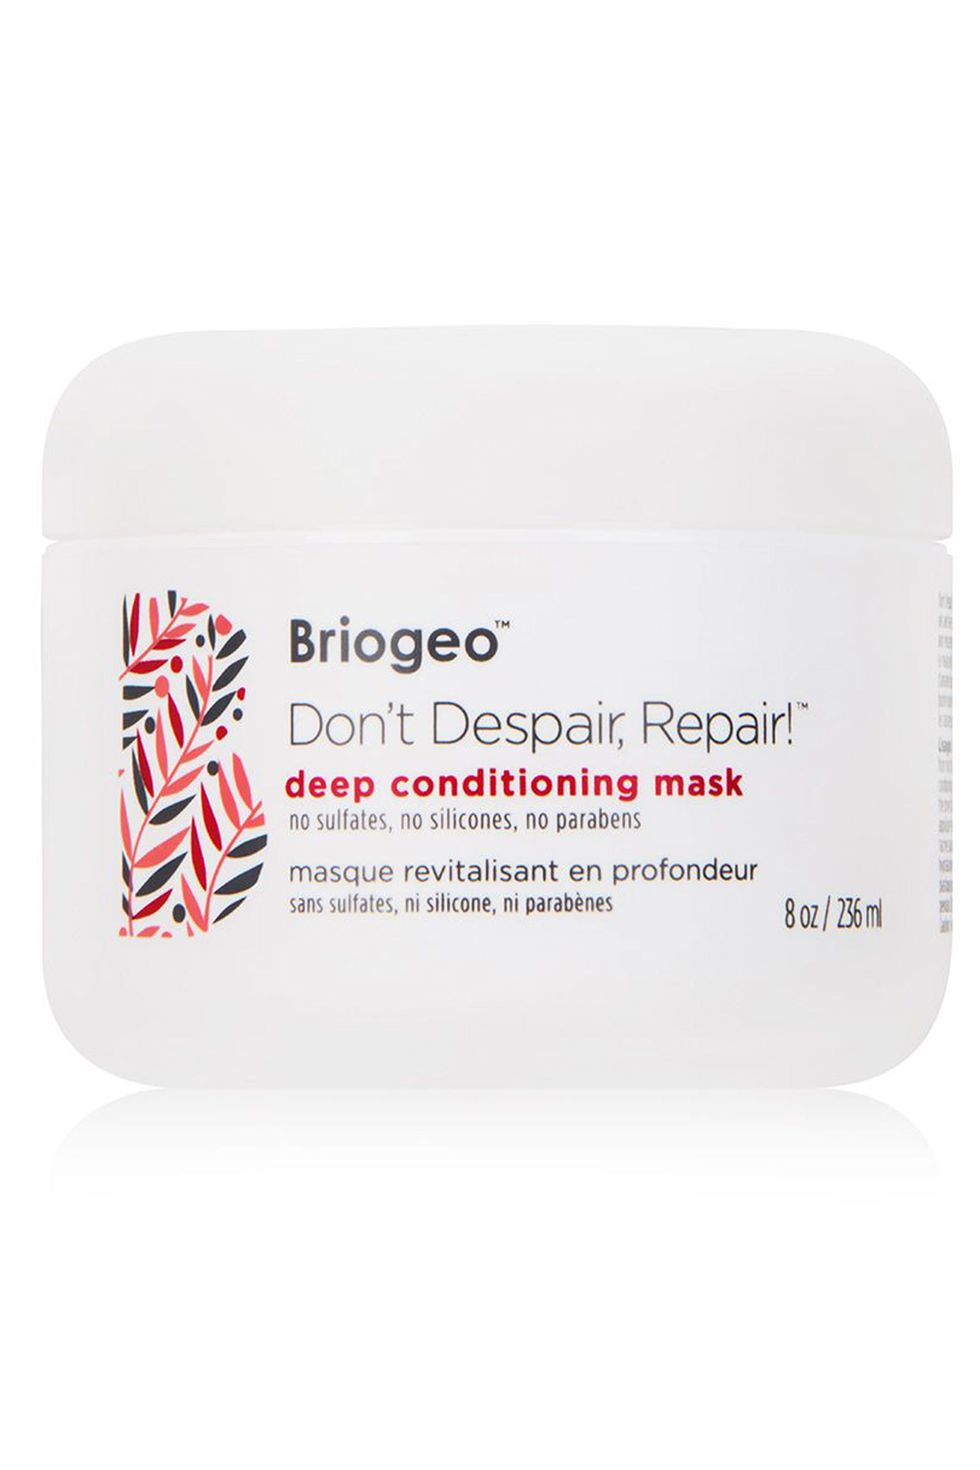 Briogeo Don't Despair Repair Deep Conditioning Mask